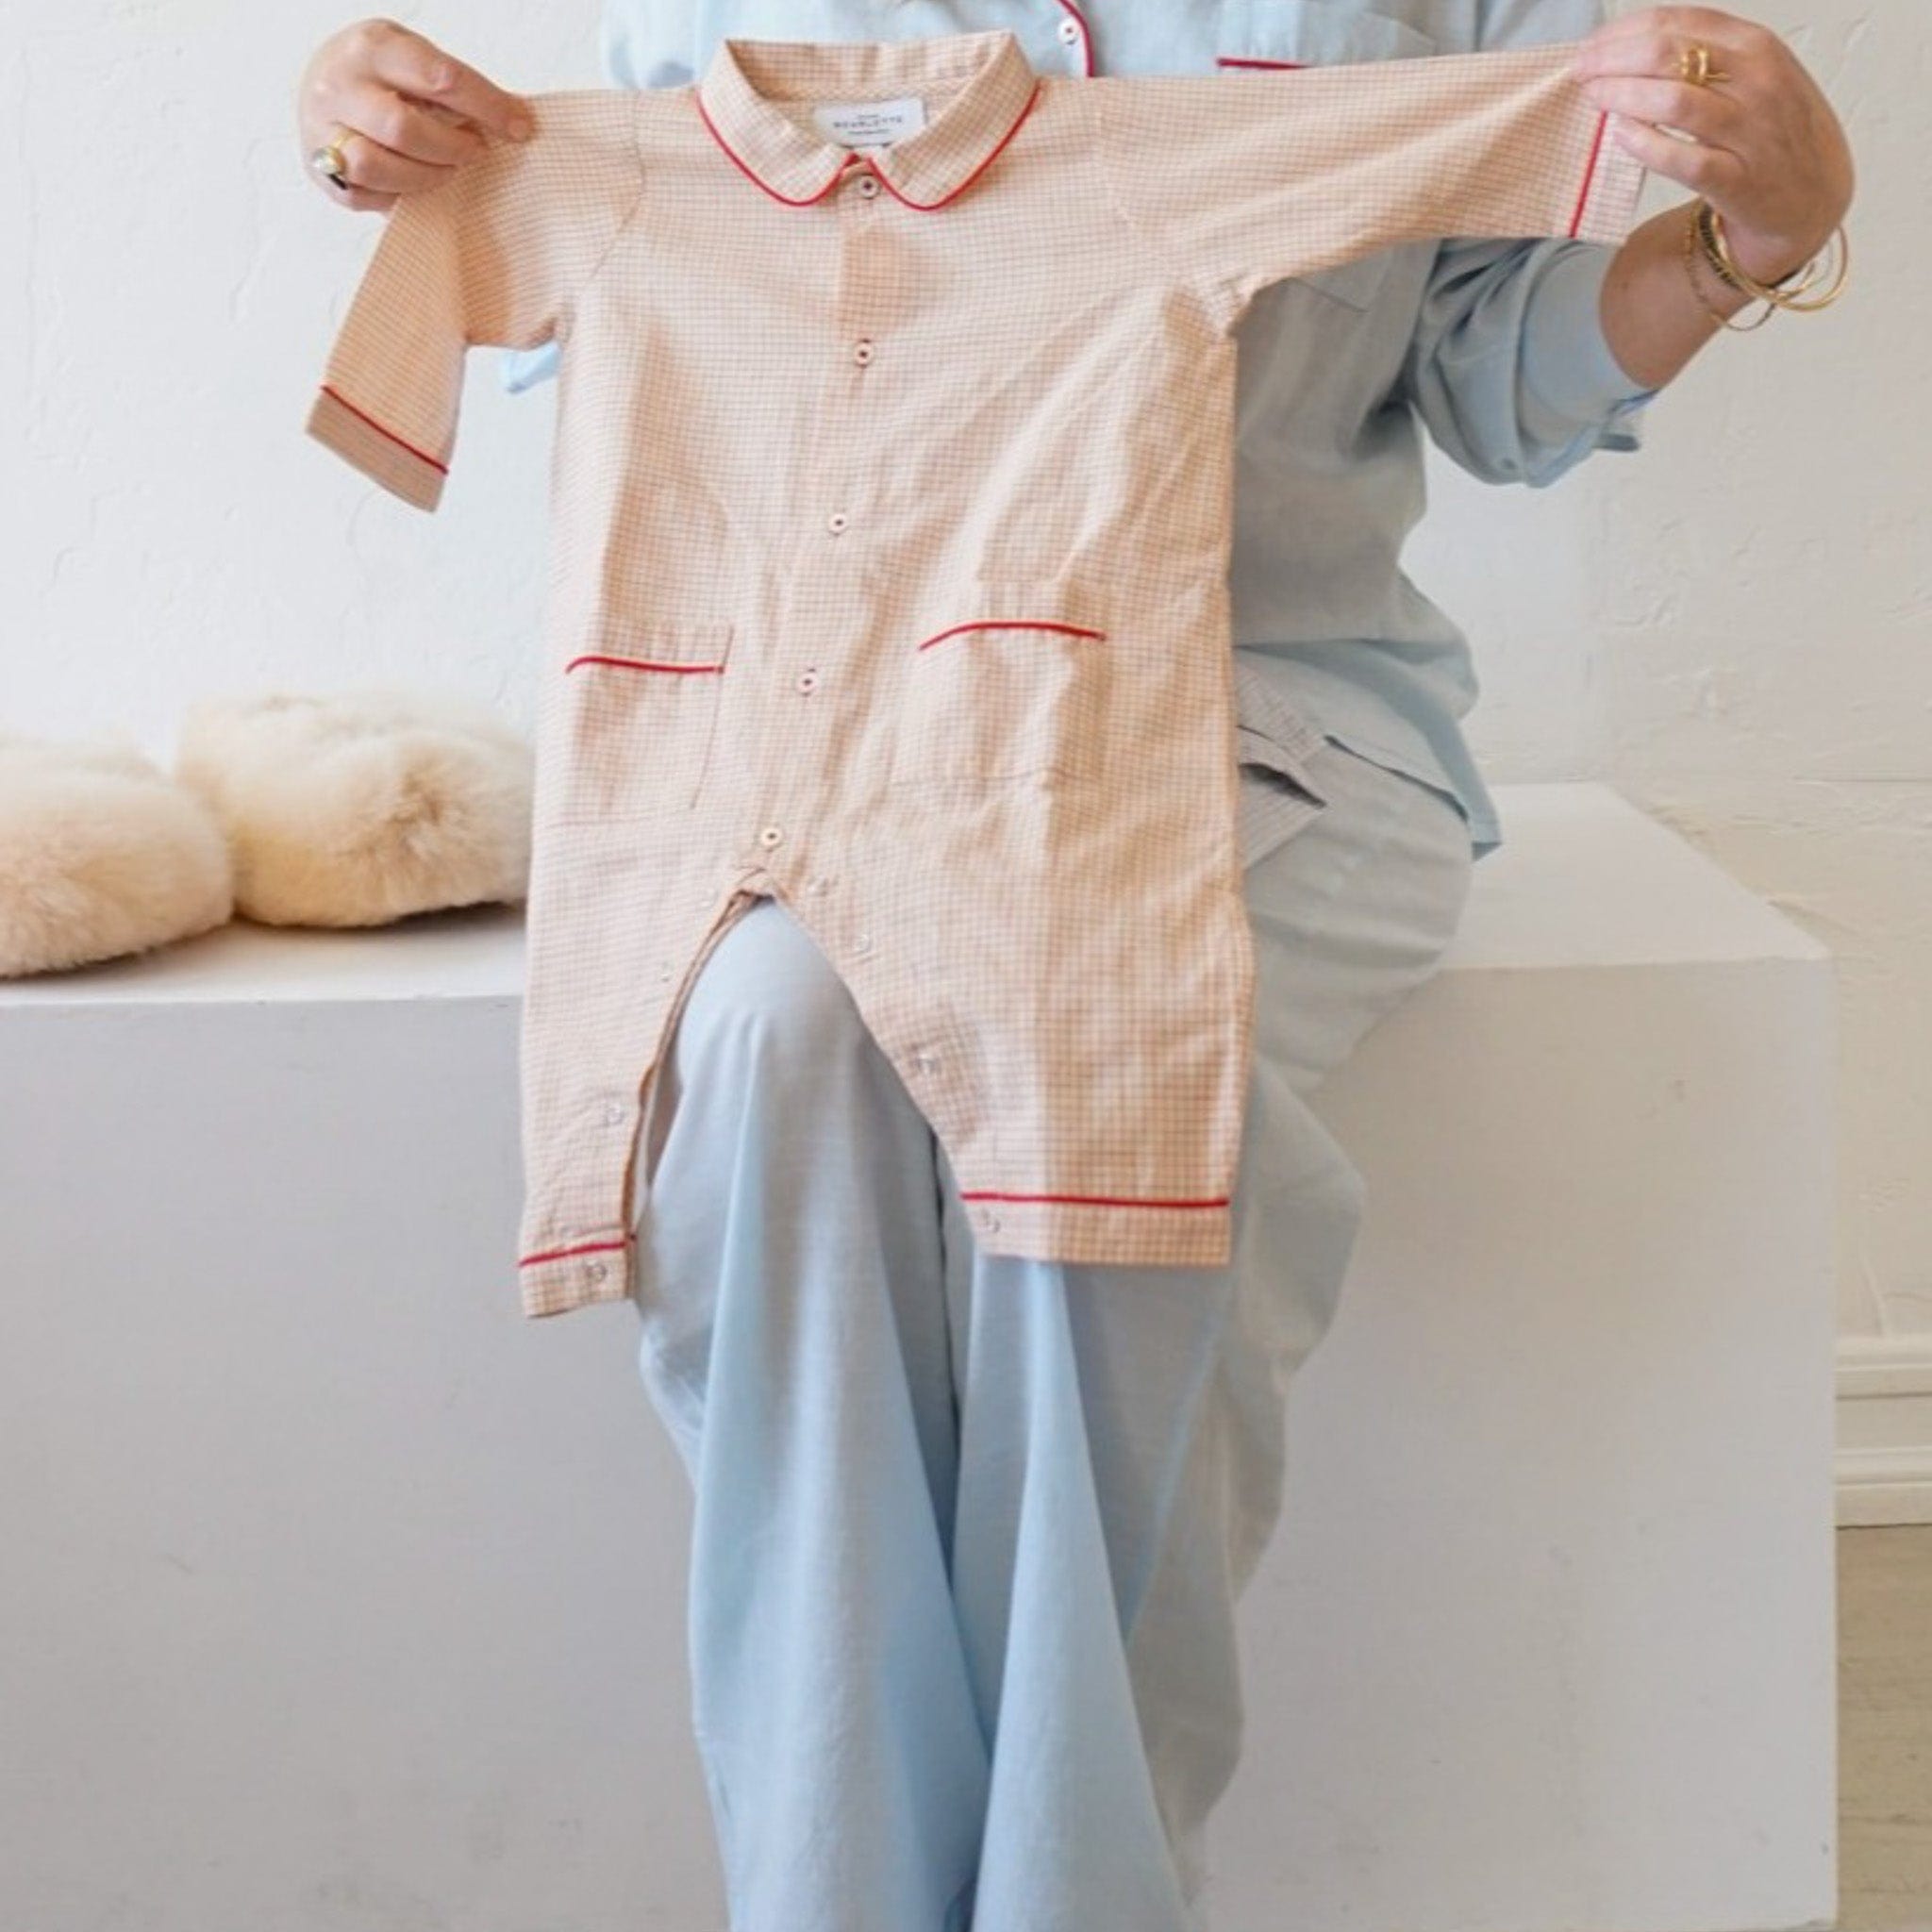 Scarlette Ateliers Apparel Baby Pajama Set by Scarlette Atelier - Grace